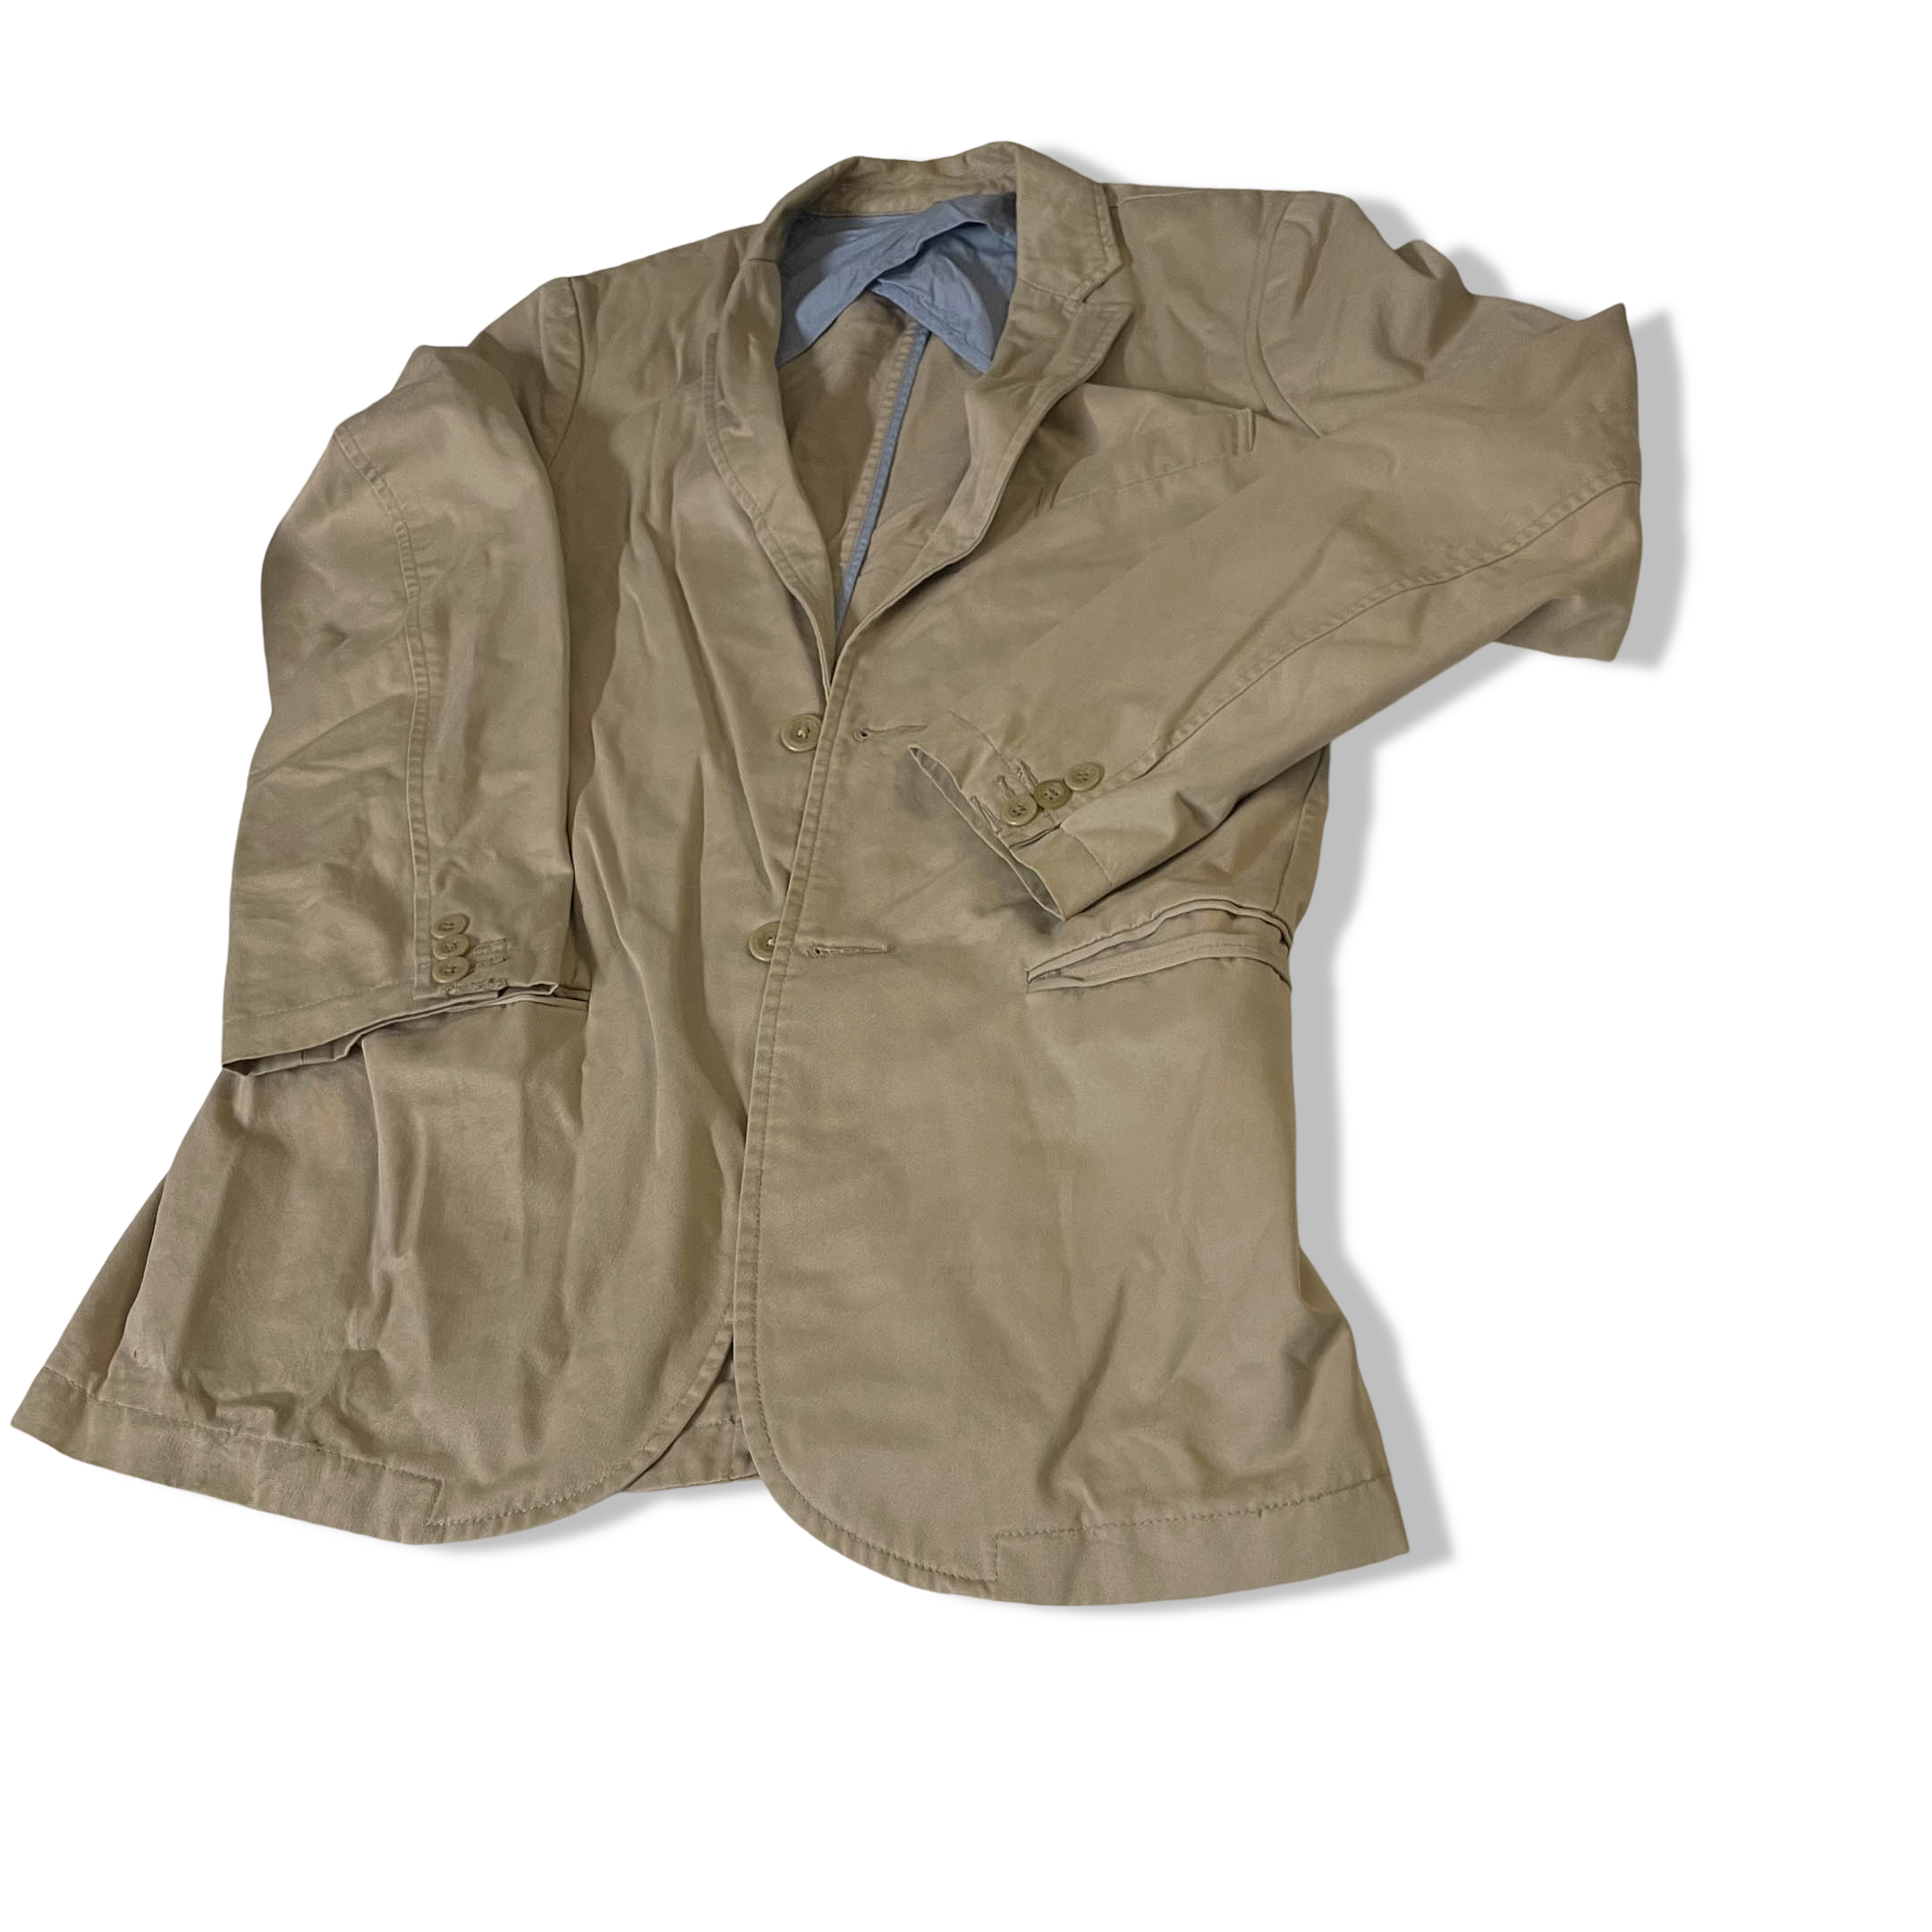 Vintage Old Navy Made in Vietnam Women's cream suit jacket in S|L30 W19|SKU 3803